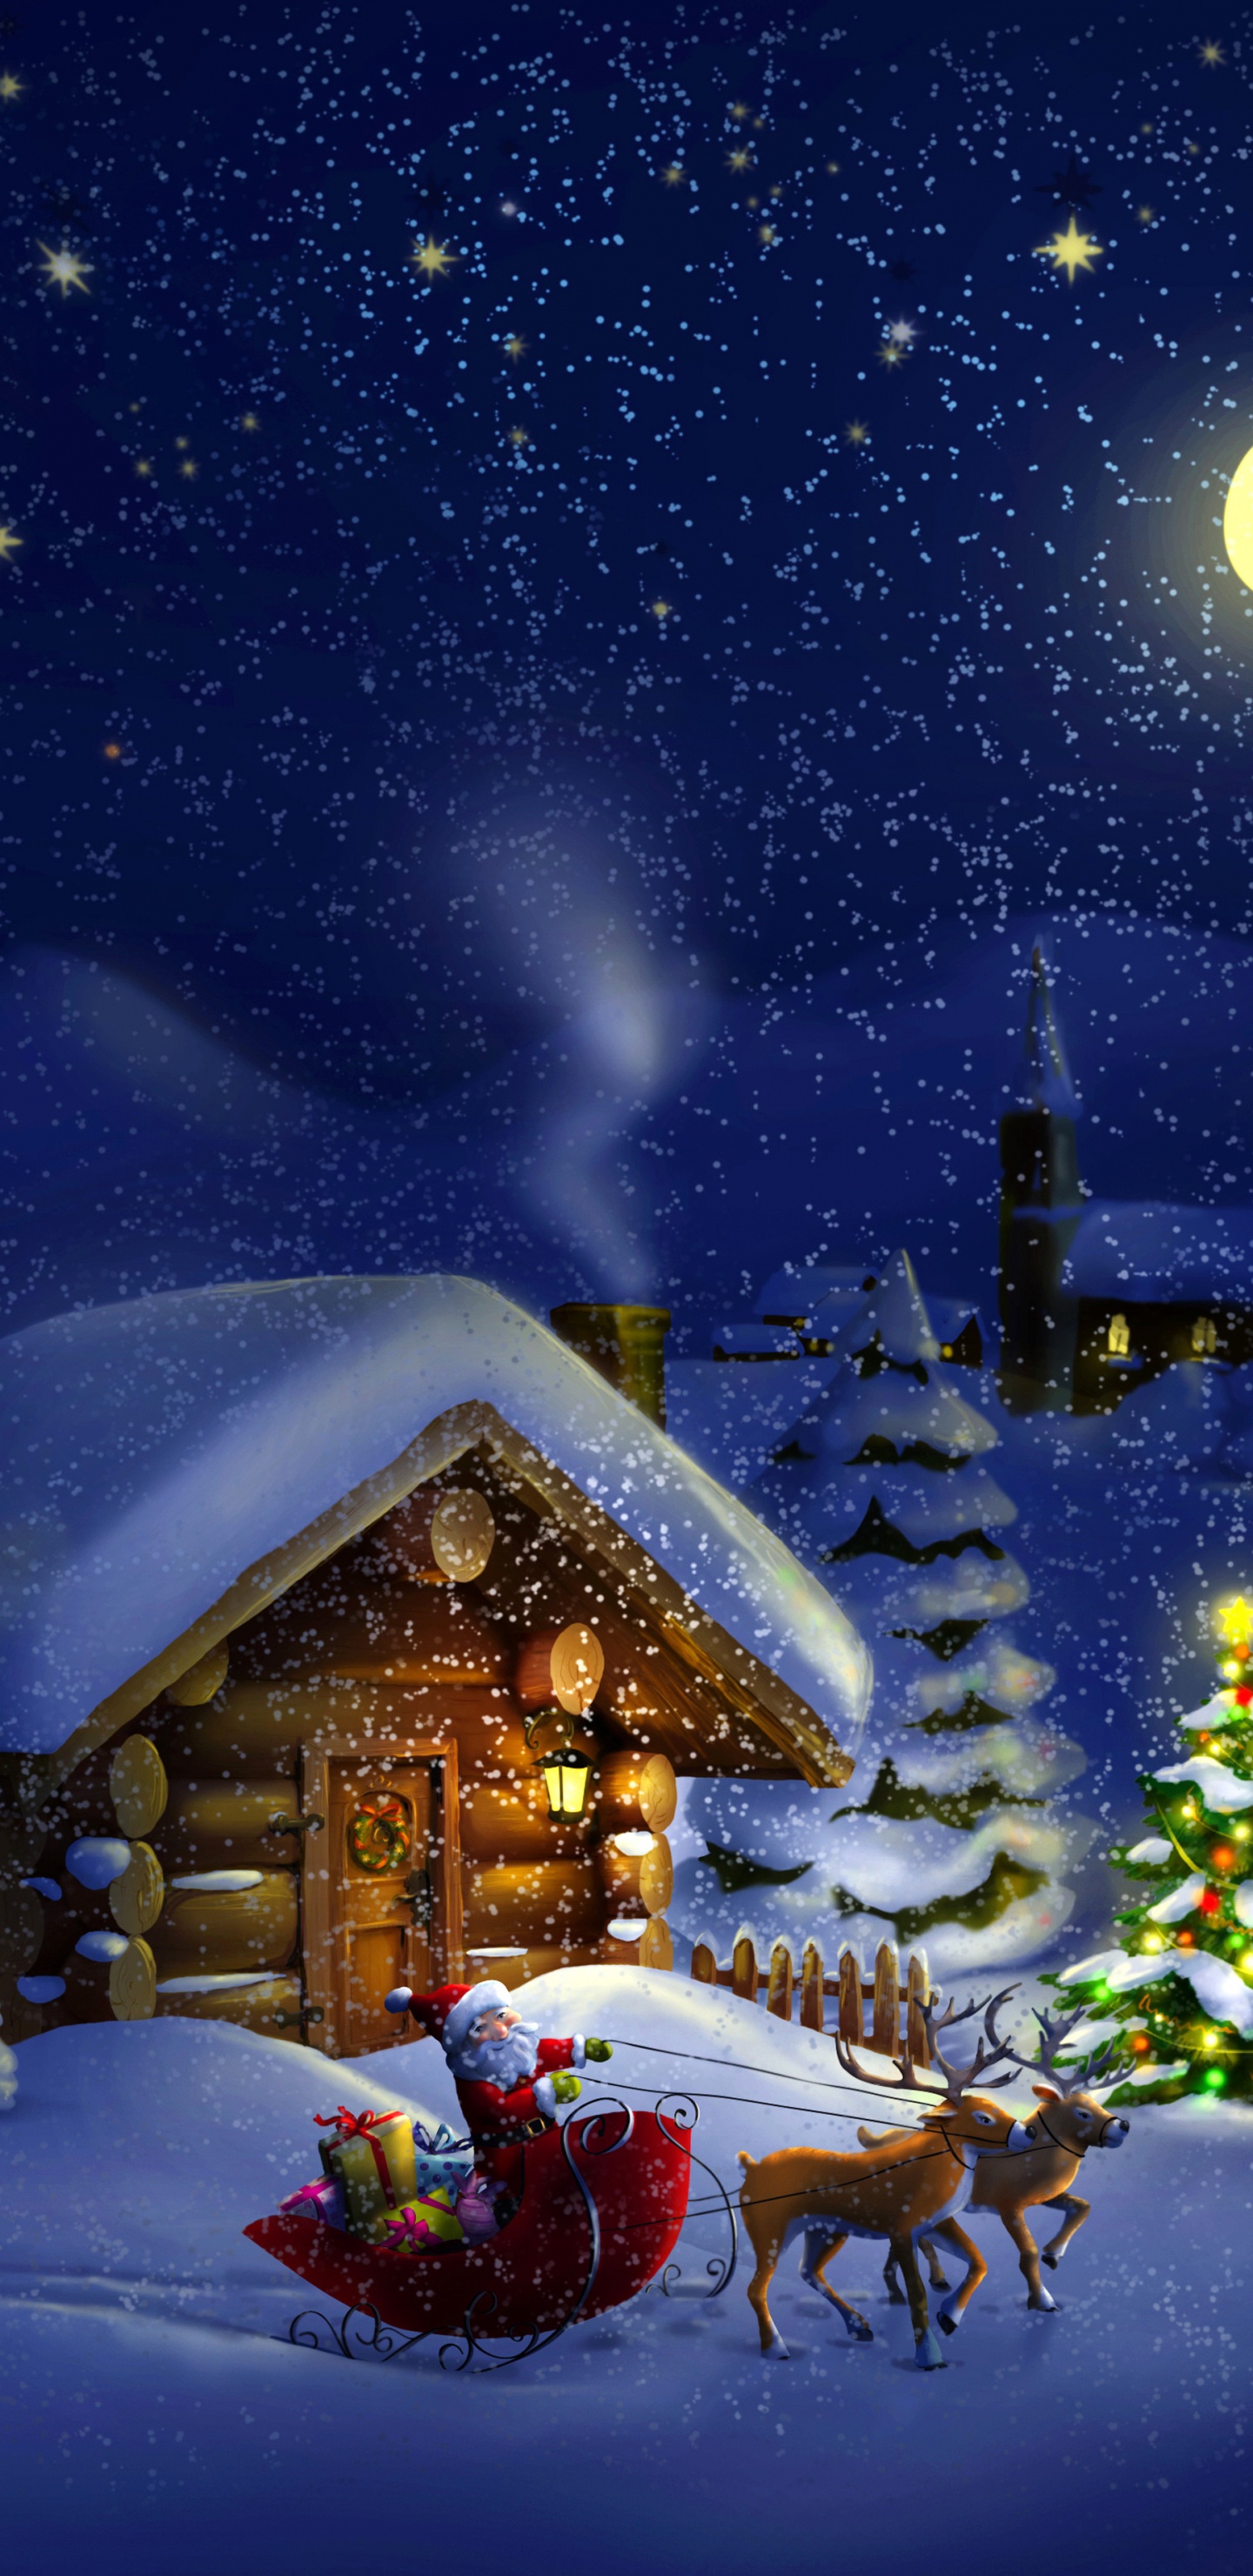 El Día De Navidad, Santa Claus, Invierno, Nieve, Navidad. Wallpaper in 1440x2960 Resolution